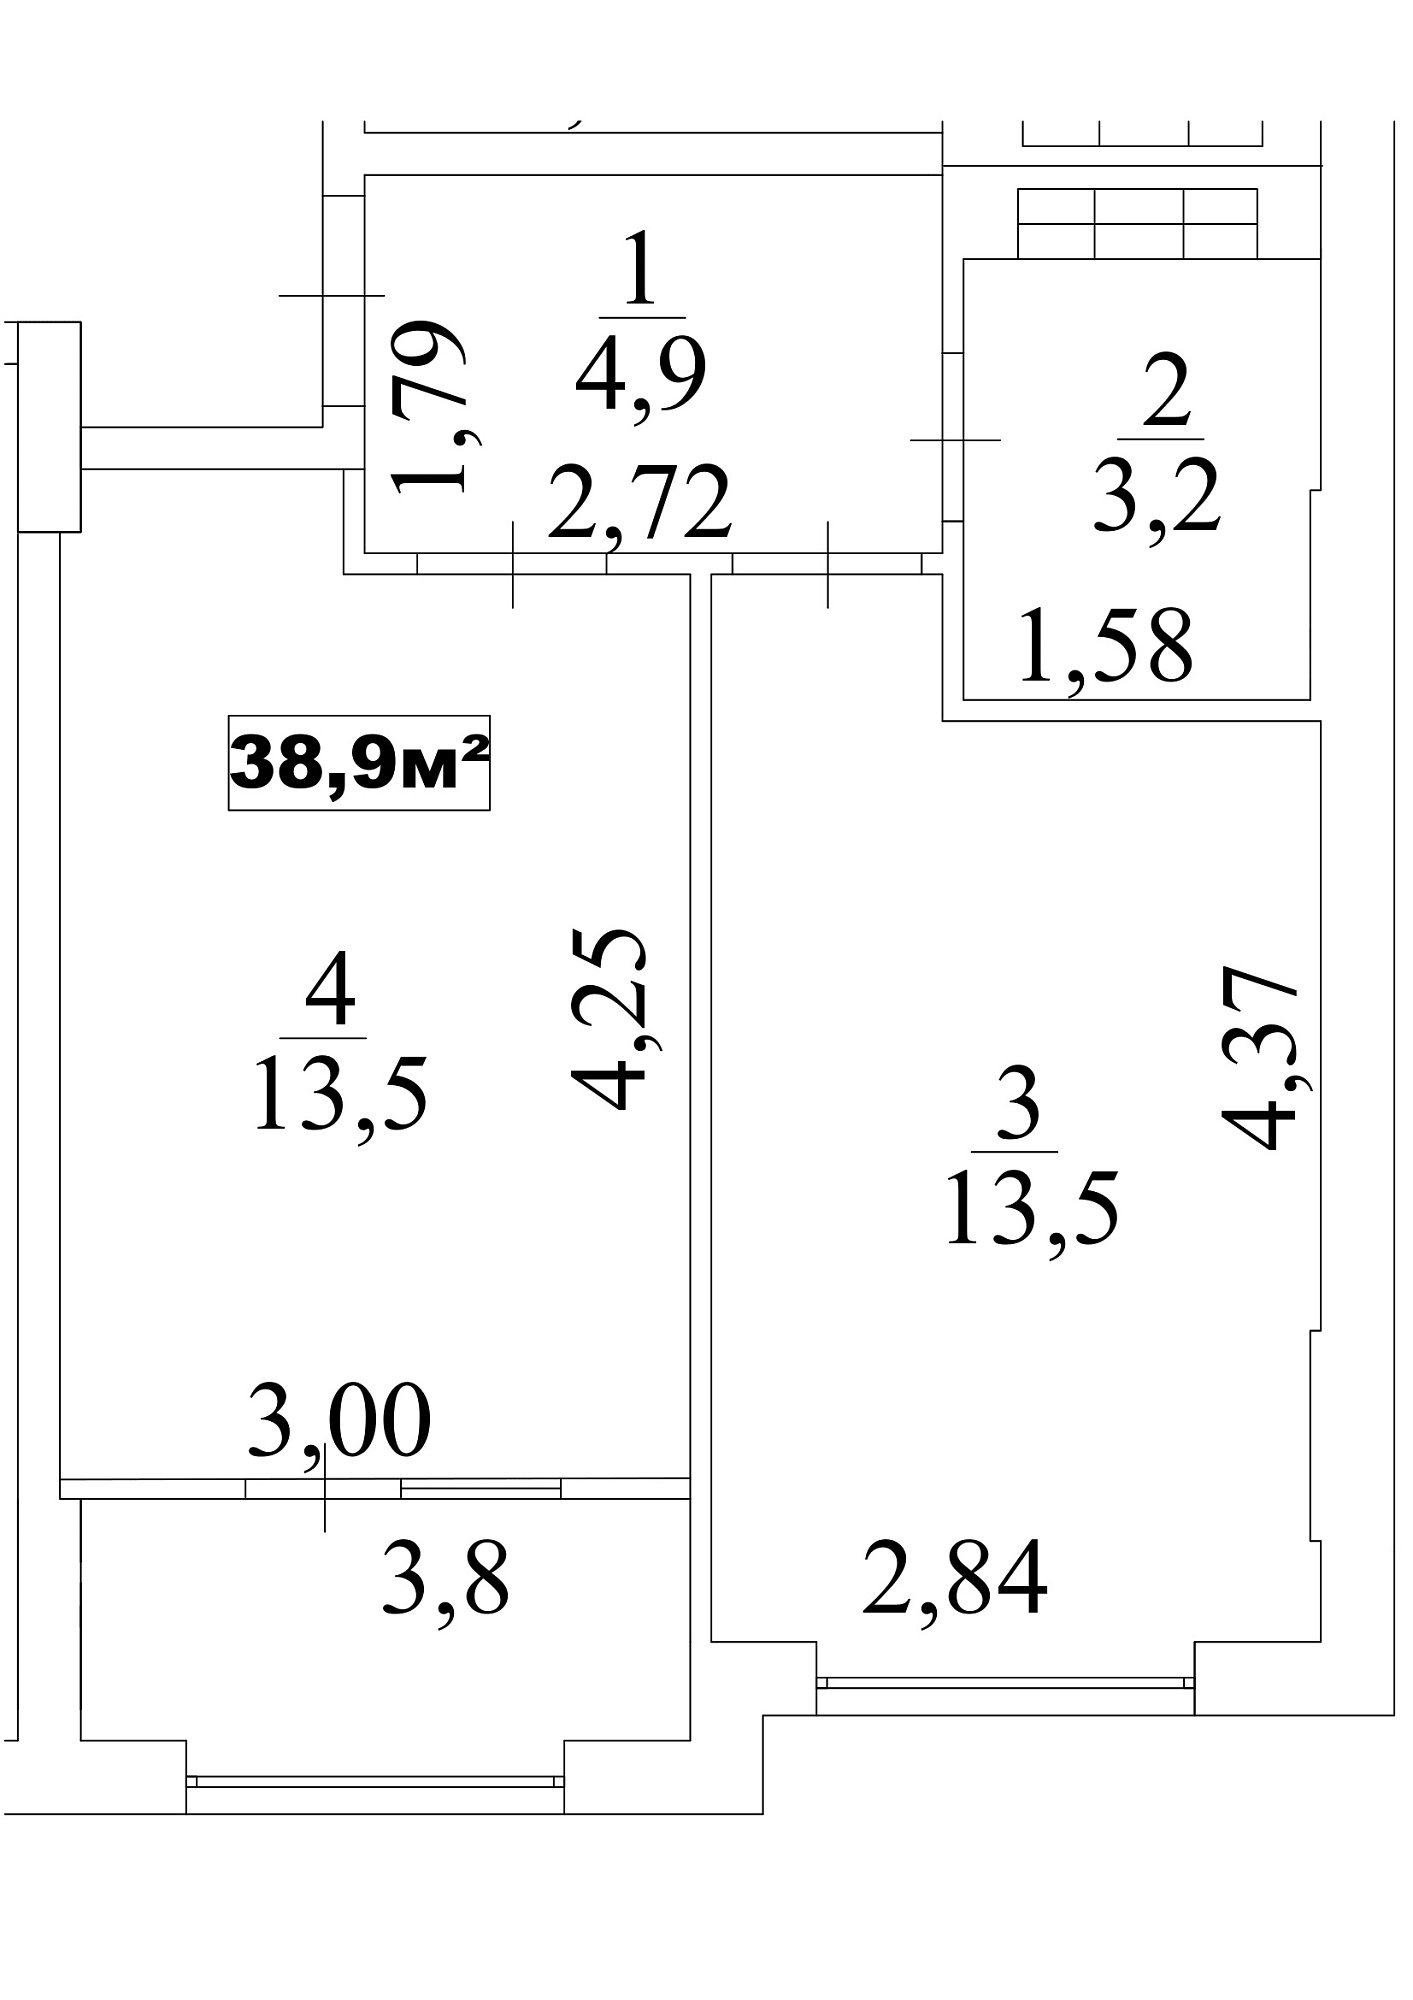 Планировка 1-к квартира площей 38.9м2, AB-10-07/0061в.